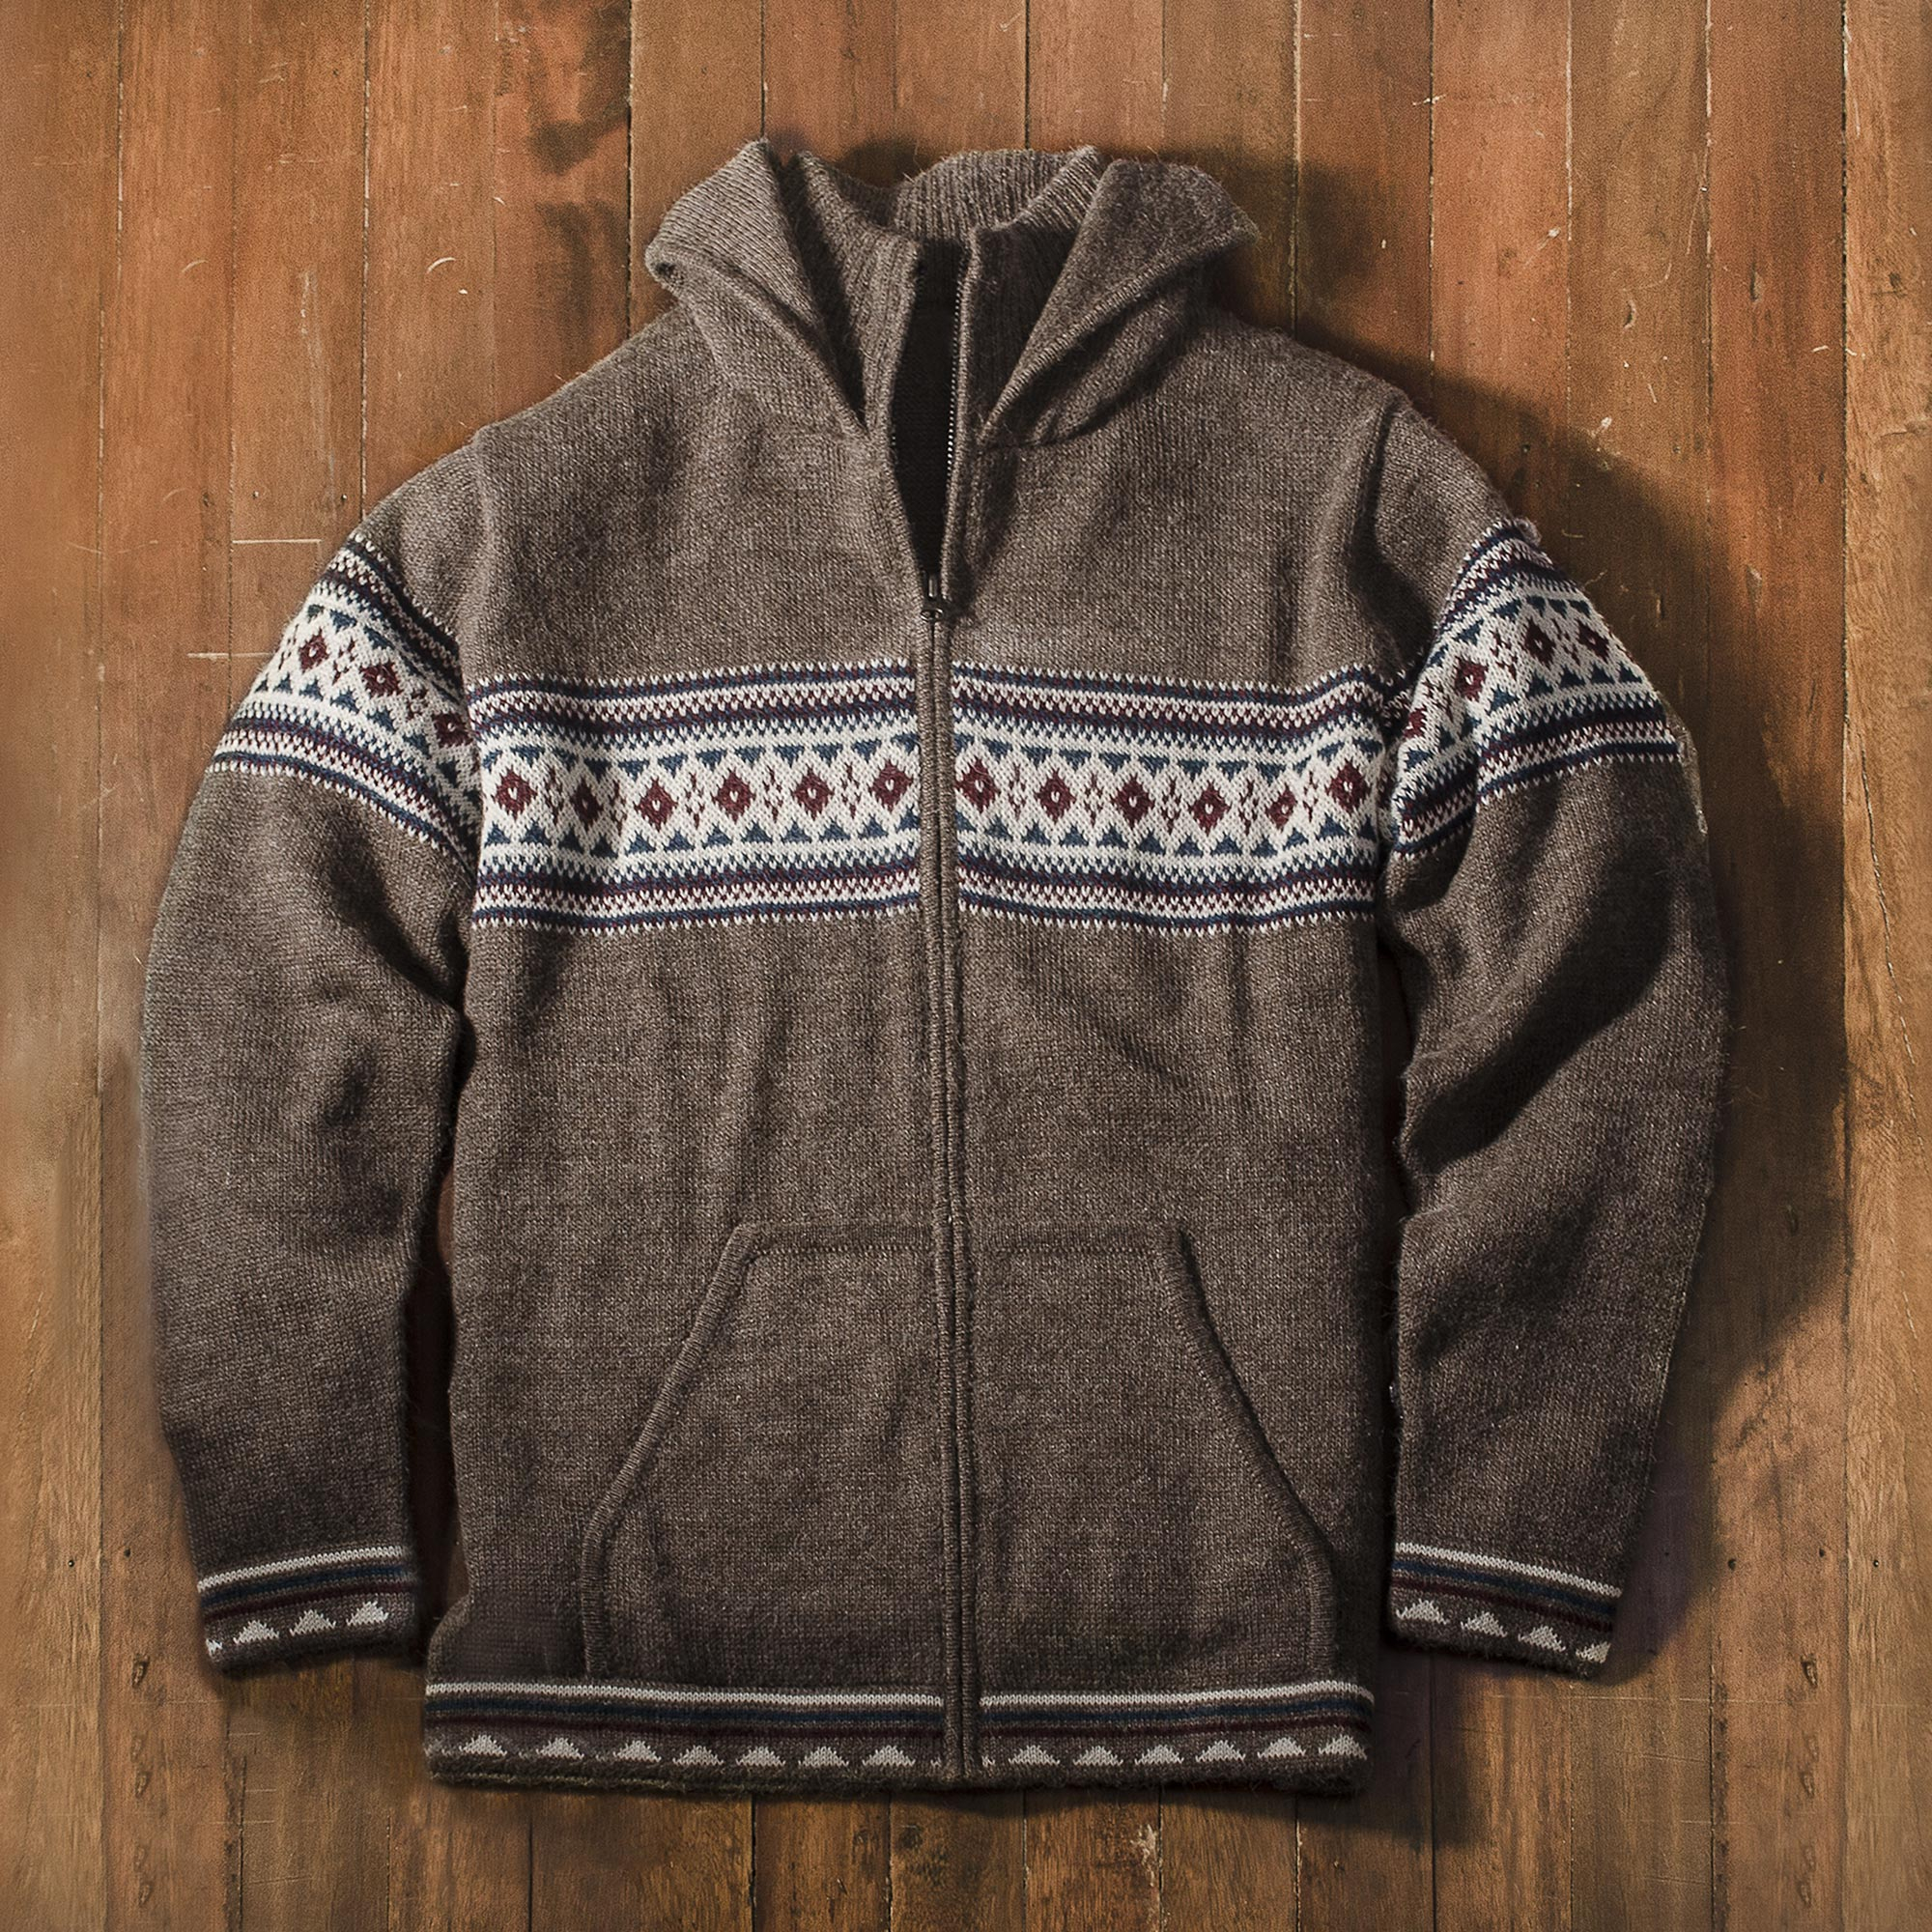 Men's 100% Alpaca Brown Geometric Hoodie Jacket from Peru - Aventura ...